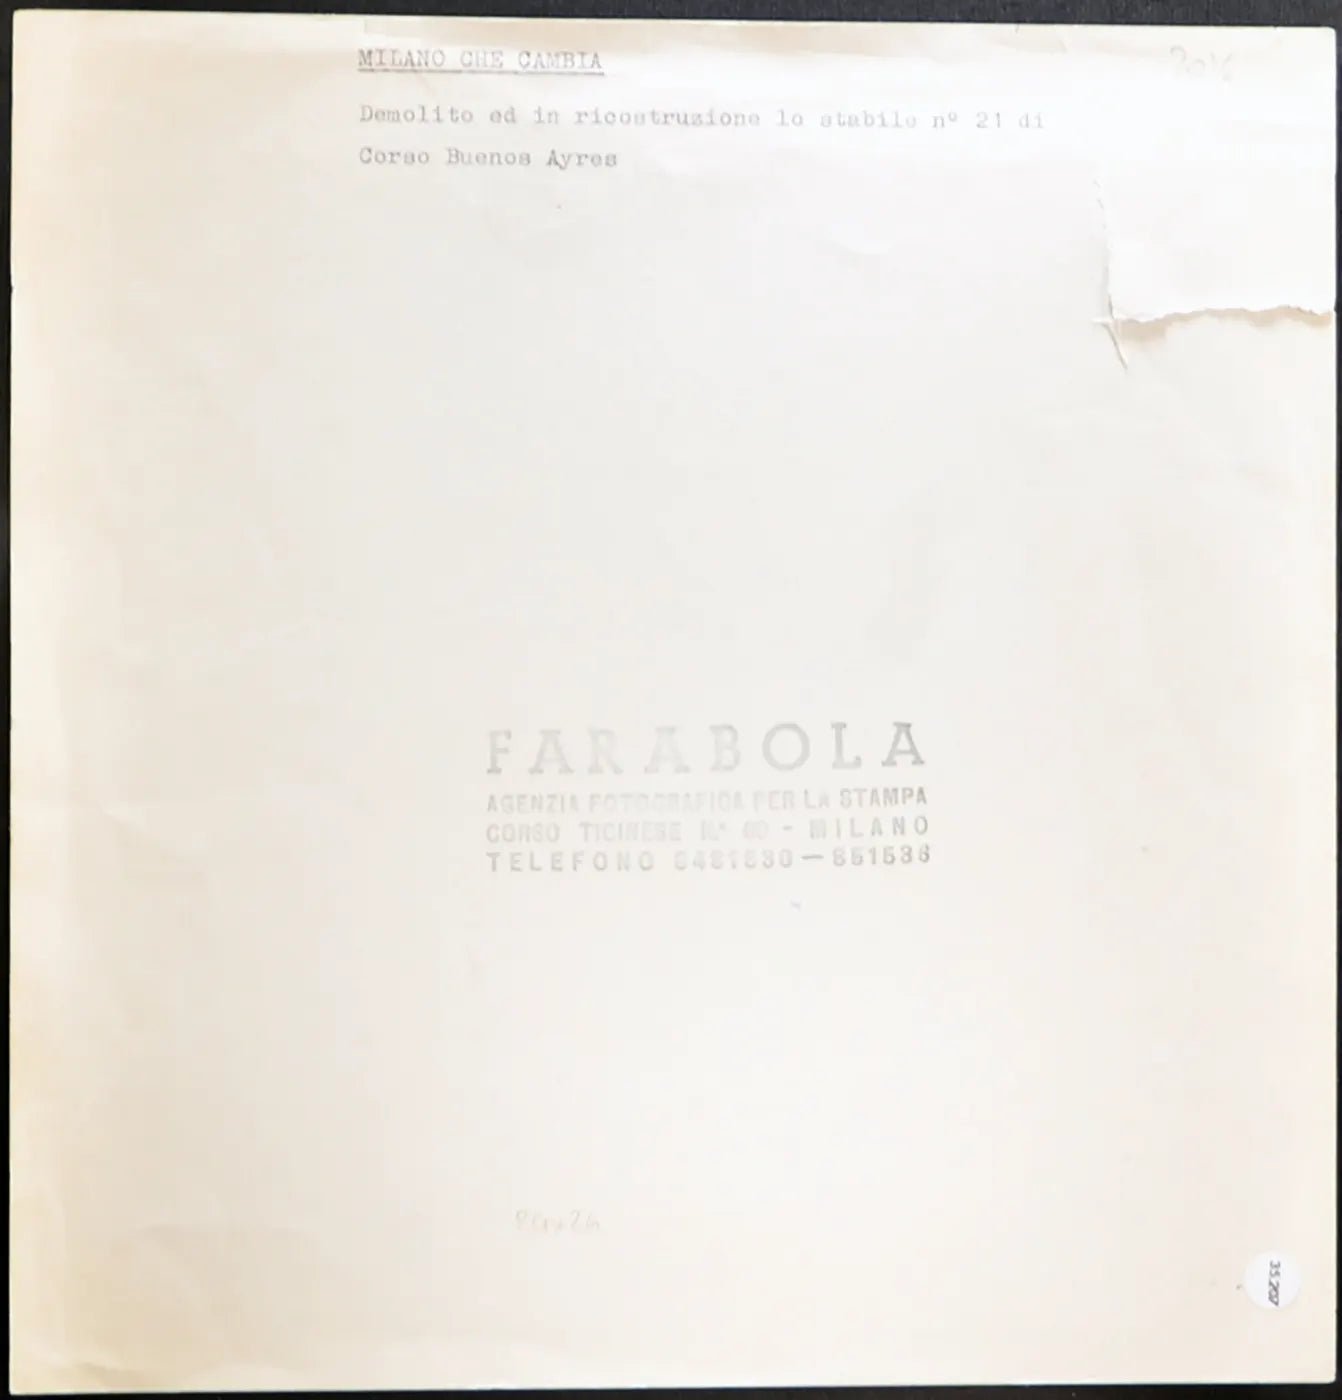 Milano Corso Buenos Aires anni 60 Ft 35207 - Stampa 24x24 cm - Farabola Stampa ai sali d'argento